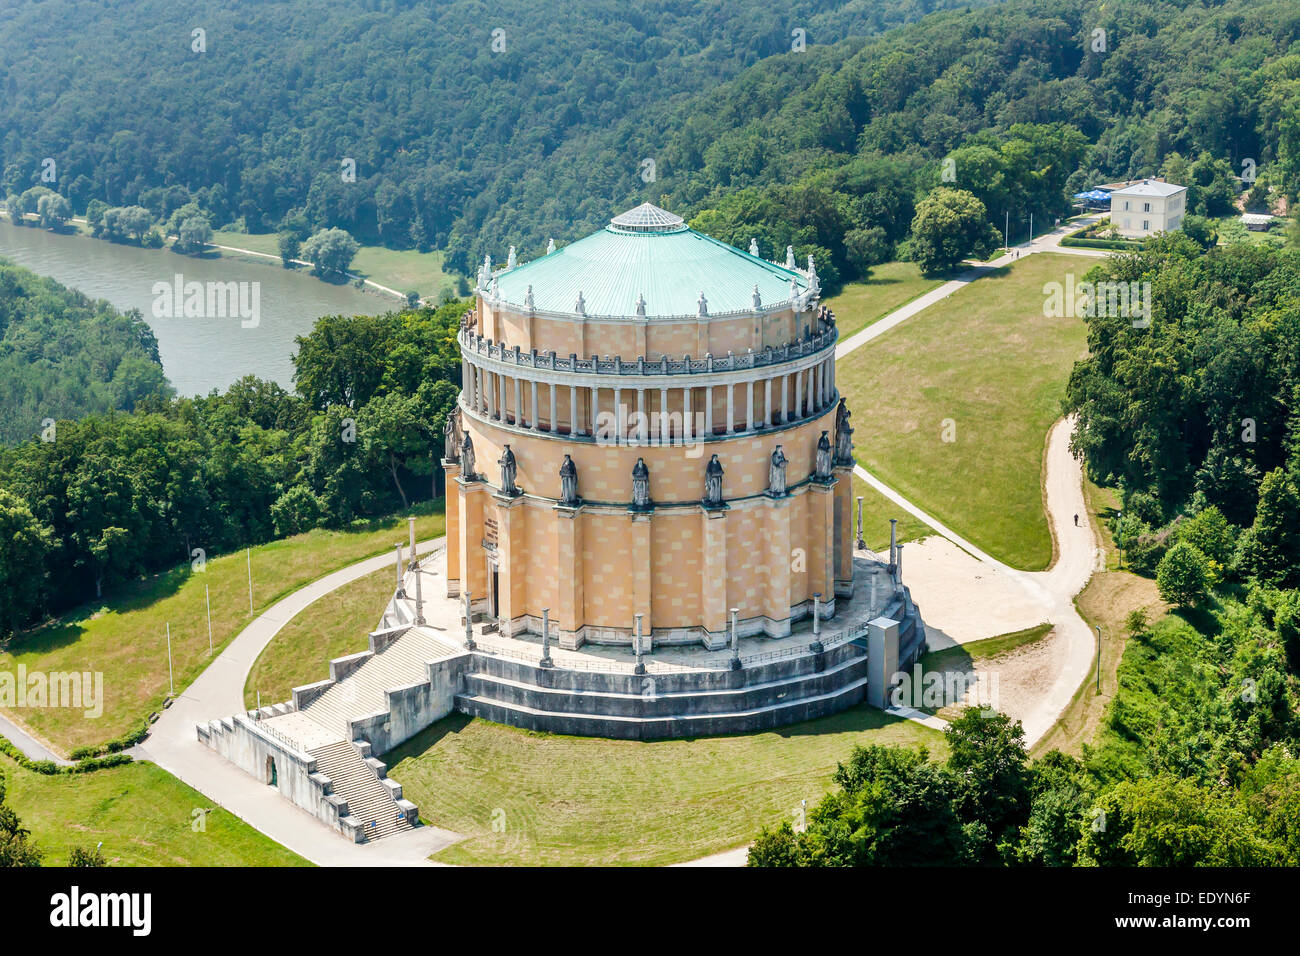 Luftaufnahme, Sinnspruch oder Halle der Befreiung, Kelheim, Bayern, Deutschland Stockfoto